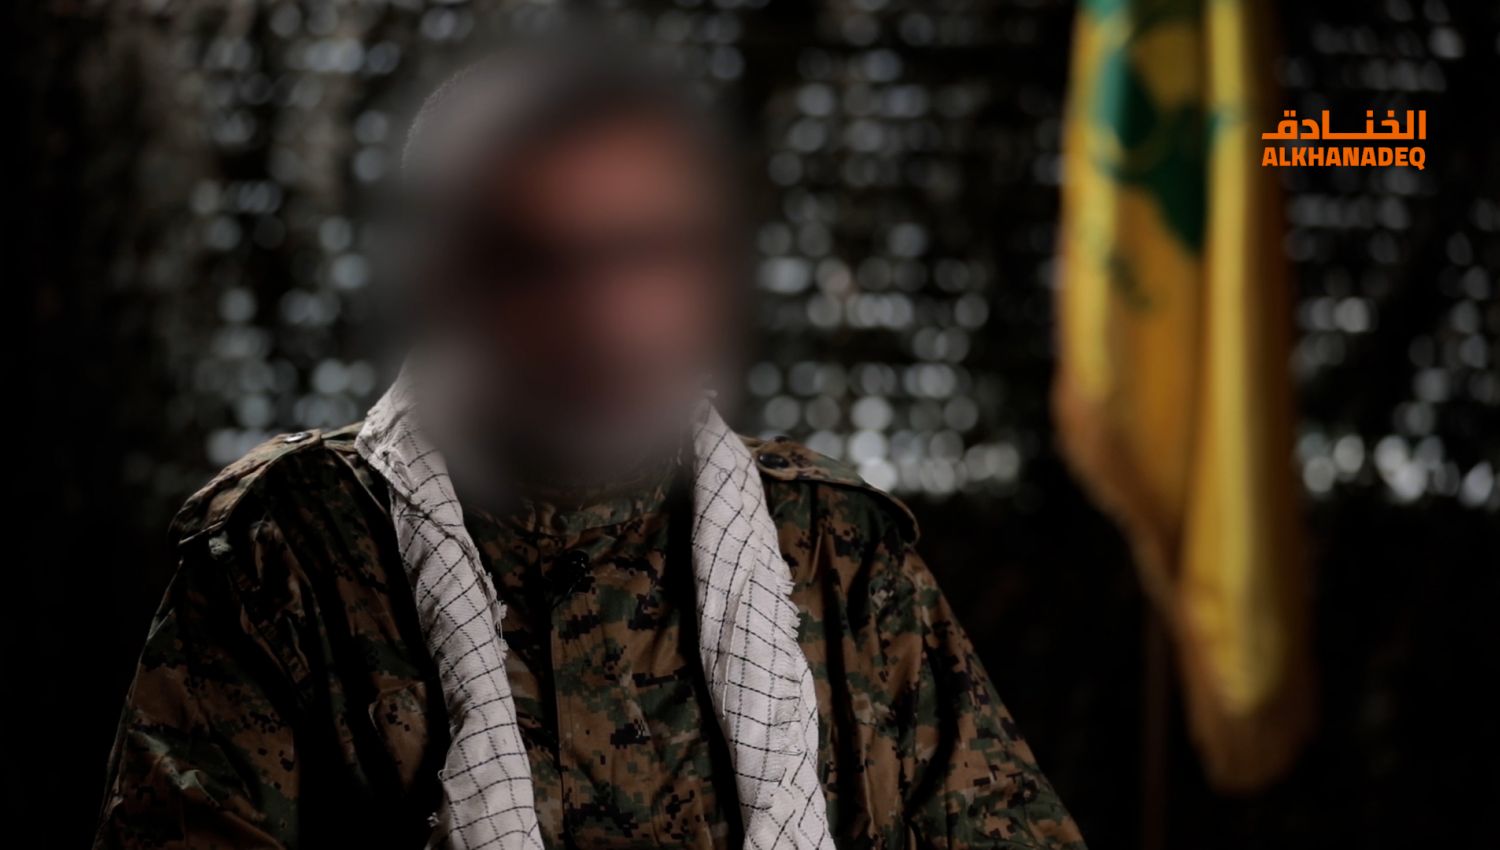 ضابط ميداني في حزب الله للخنادق: انتقلنا من الدفاع الى الهجوم وهذا يرعب الإسرائيلي